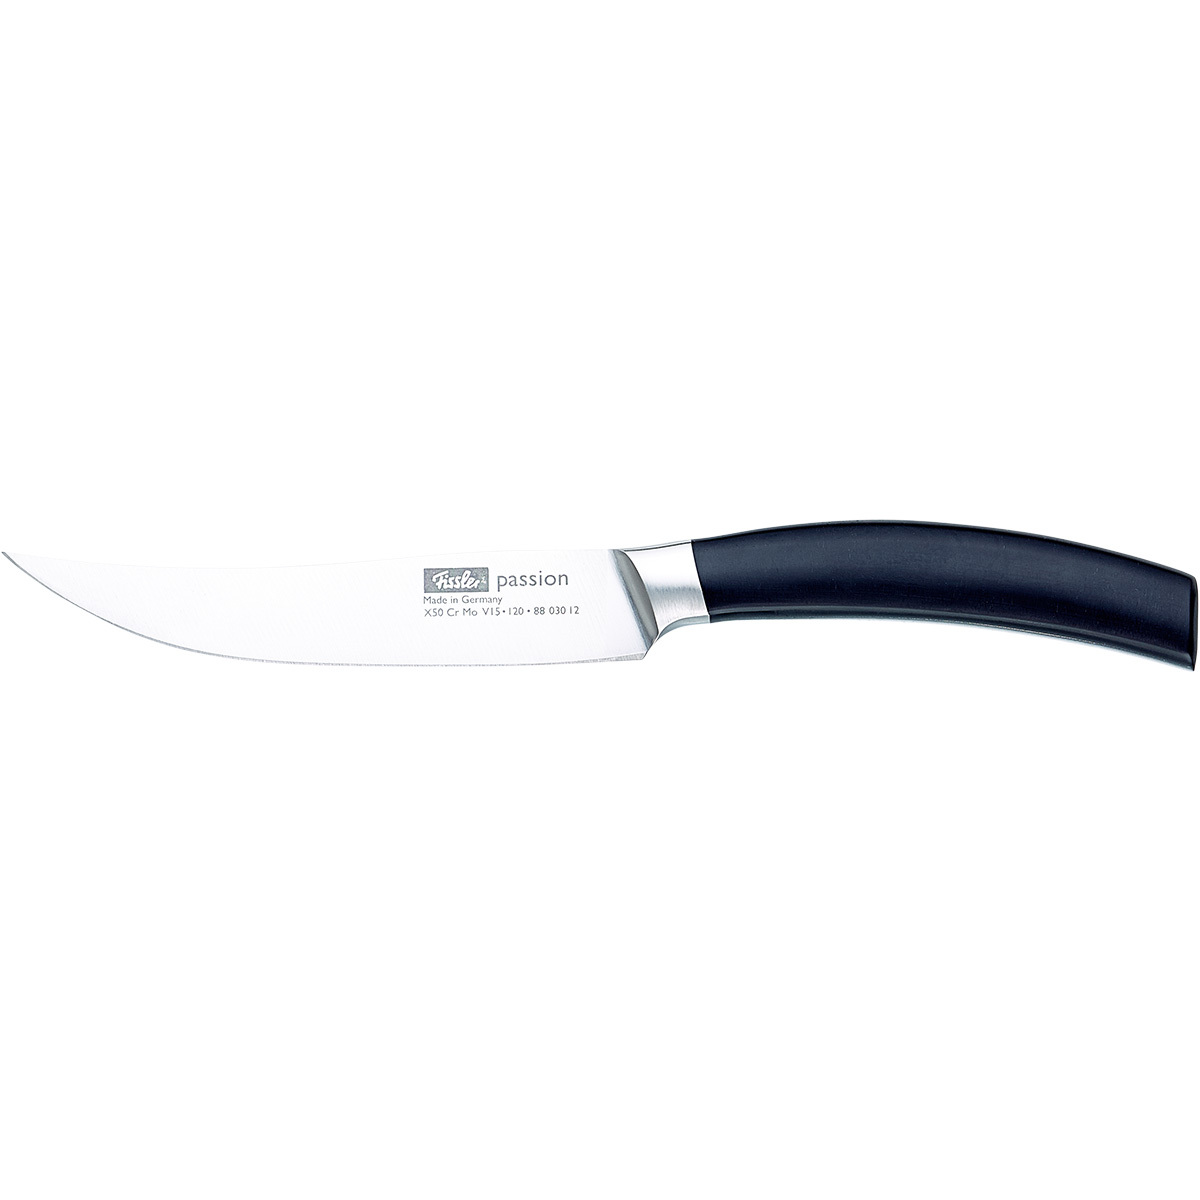 Нож стейковый Fissler Passion 120 мм 8803012 - 1